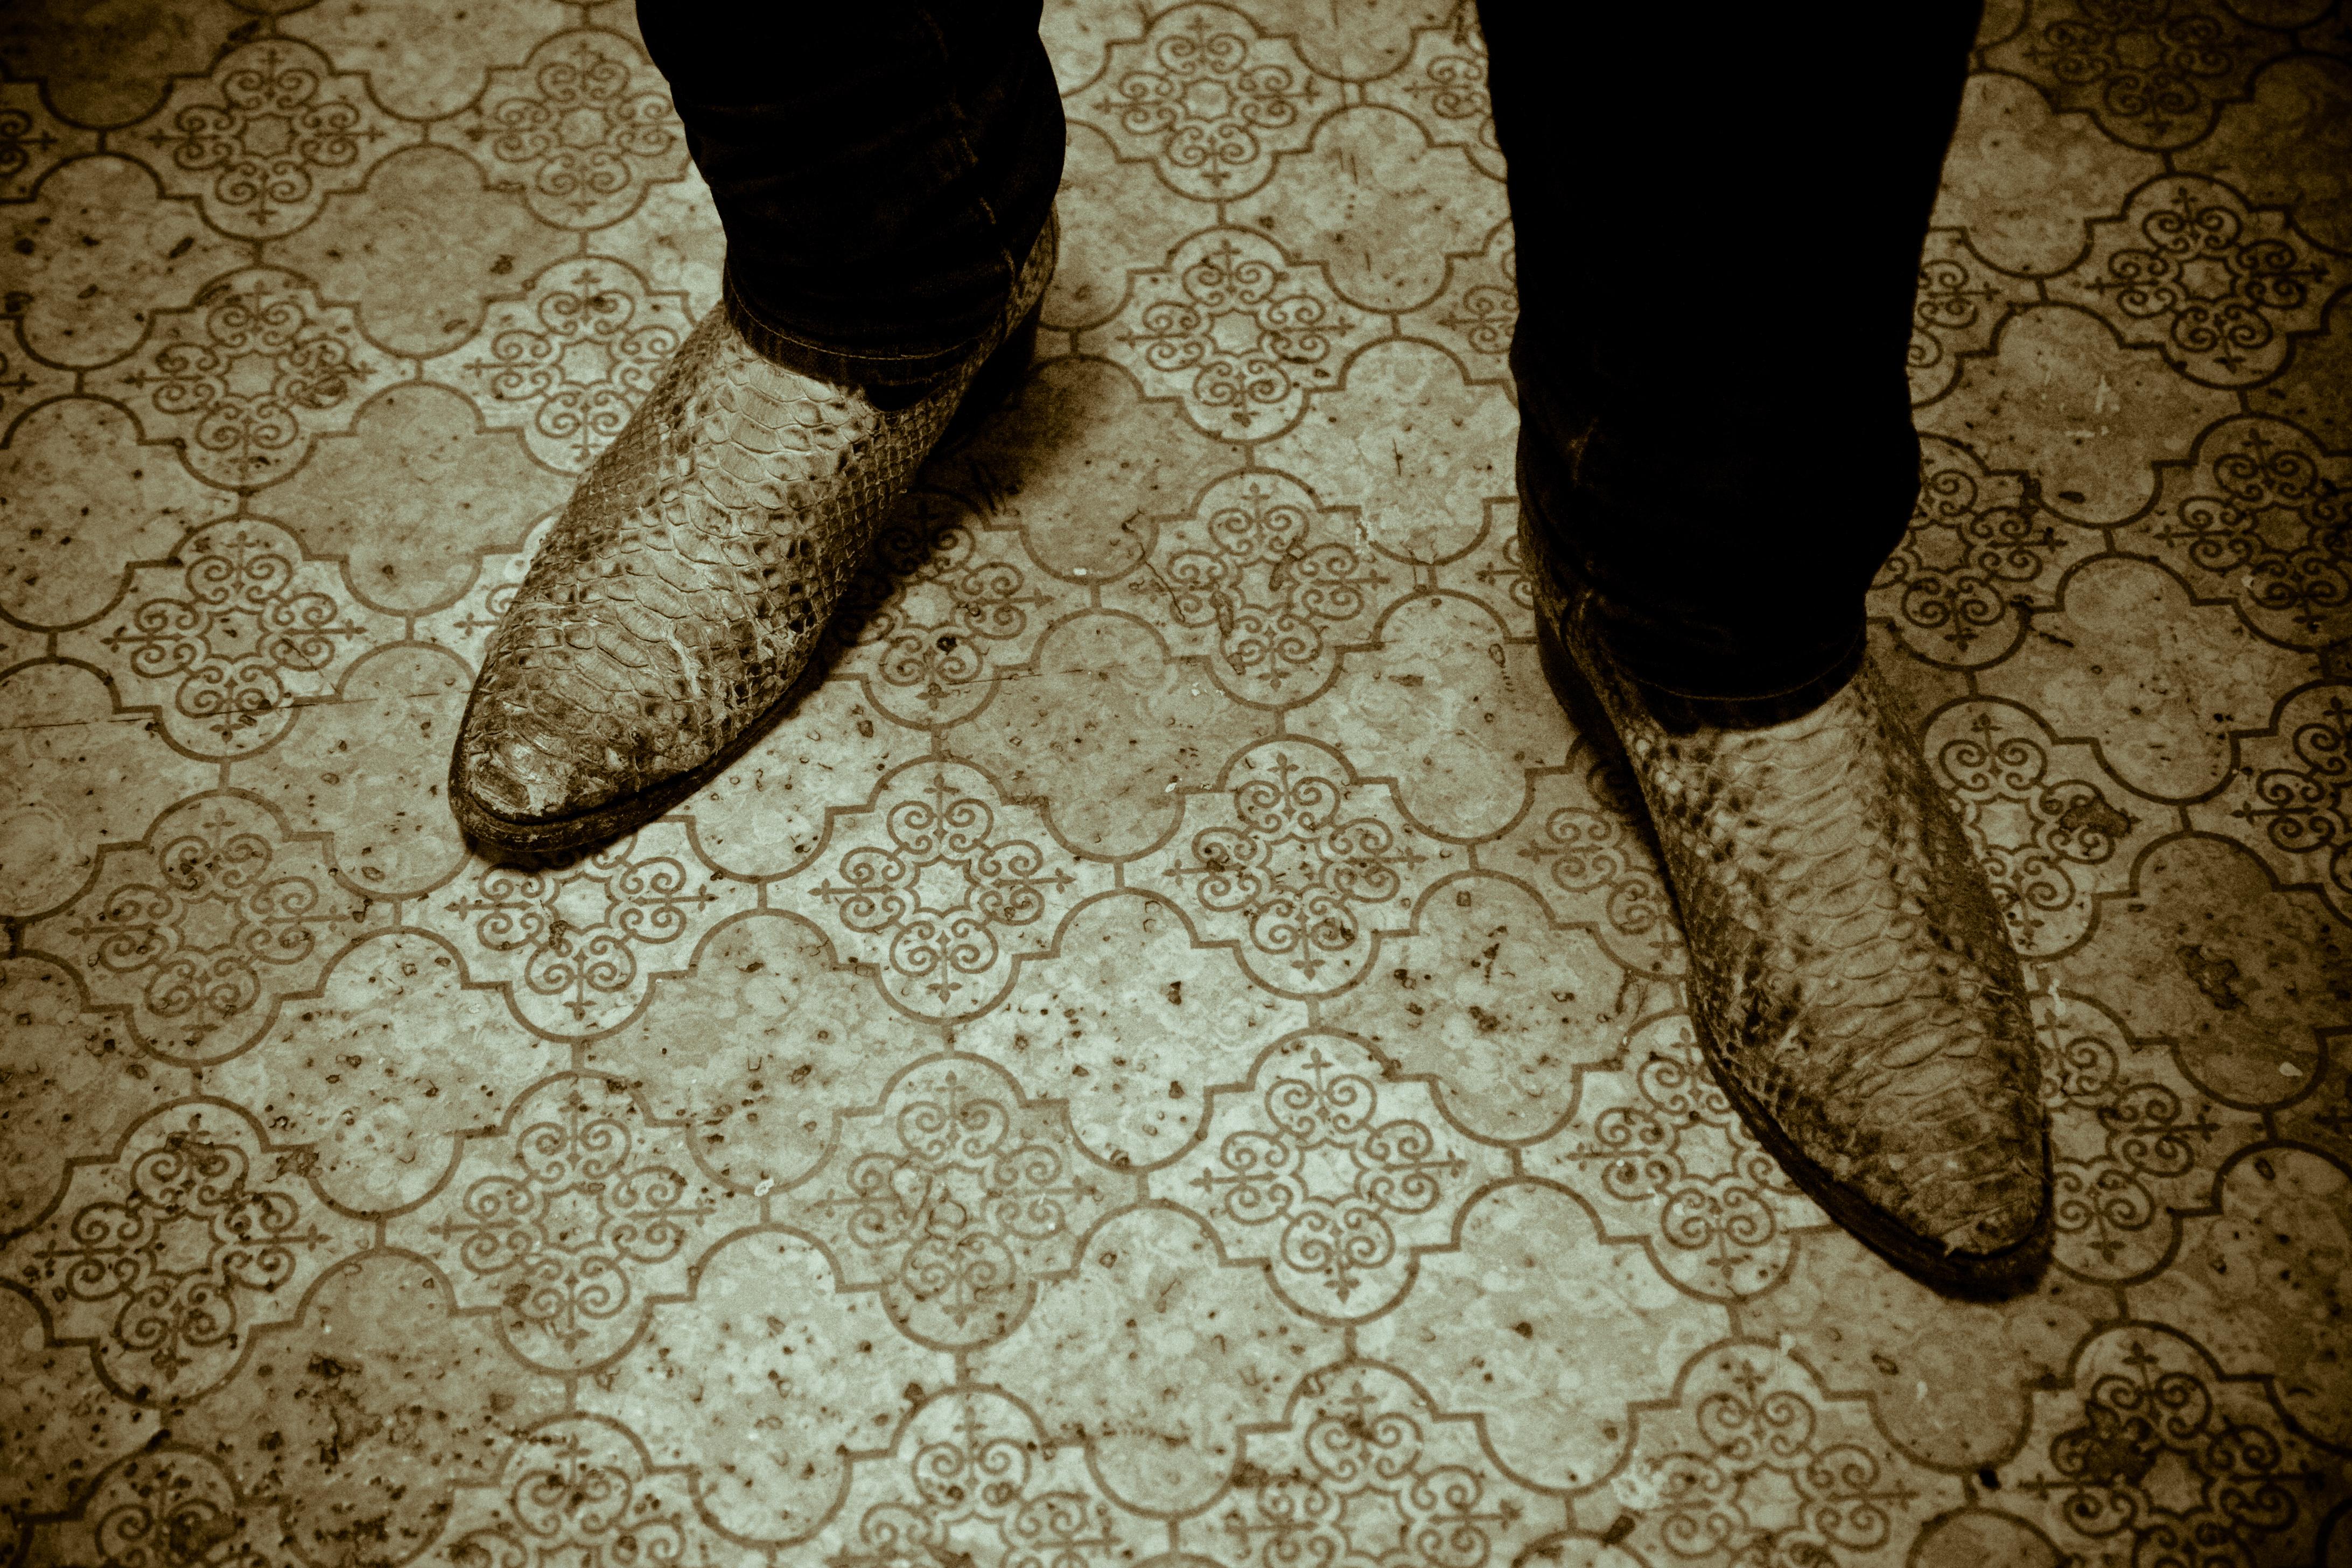 Tao Ruspoli Still-Life Photograph – Diese Stiefel werden zur Verschmelzung hergestellt